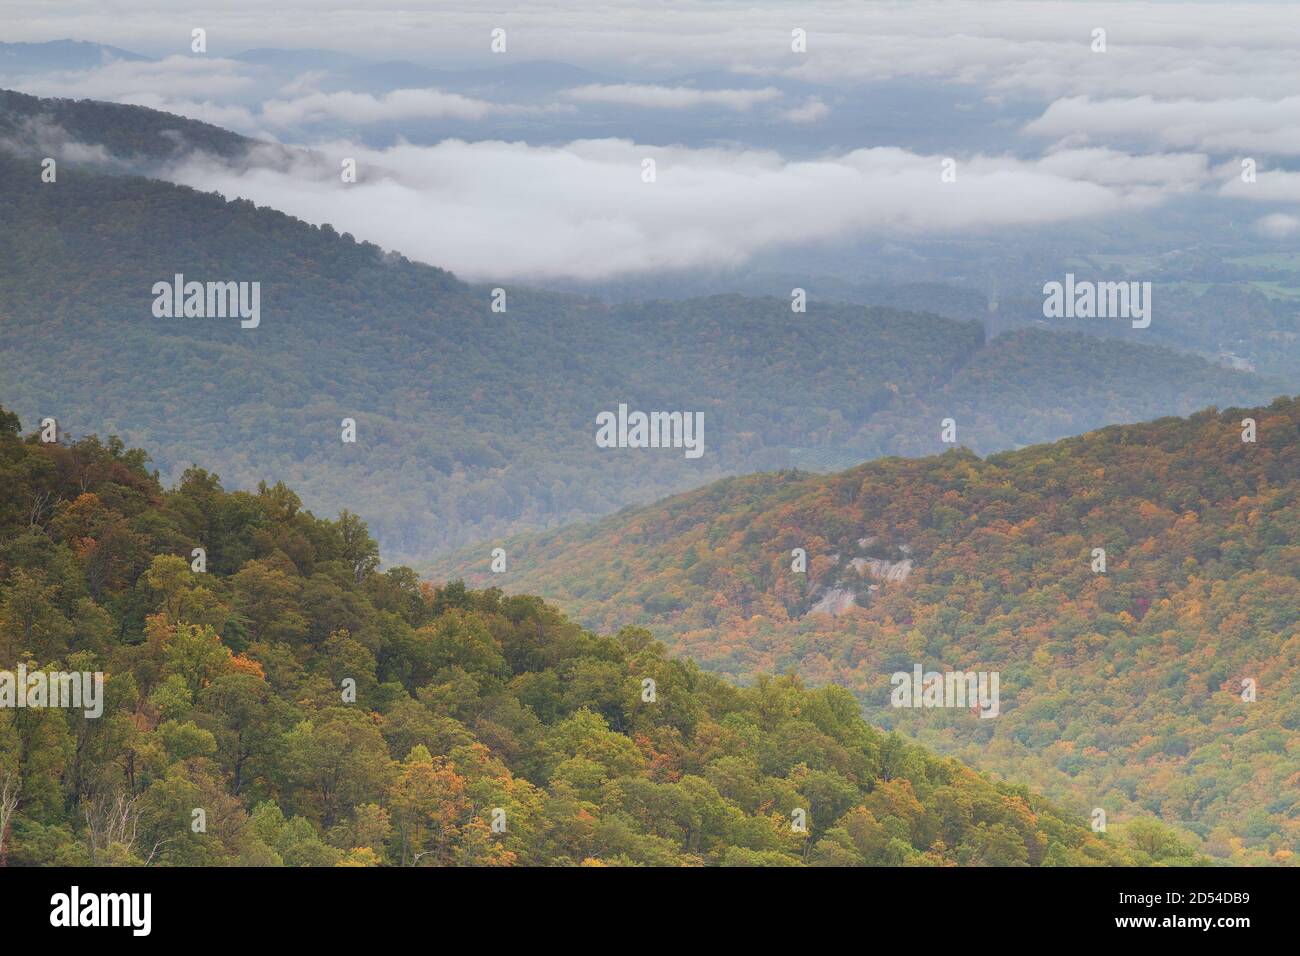 Scène d'automne en regardant vers le bas sur les chaînes de montagnes de la vallée de Shenandoah depuis le parc national de Shenandoah Skyline Drive, États-Unis Banque D'Images